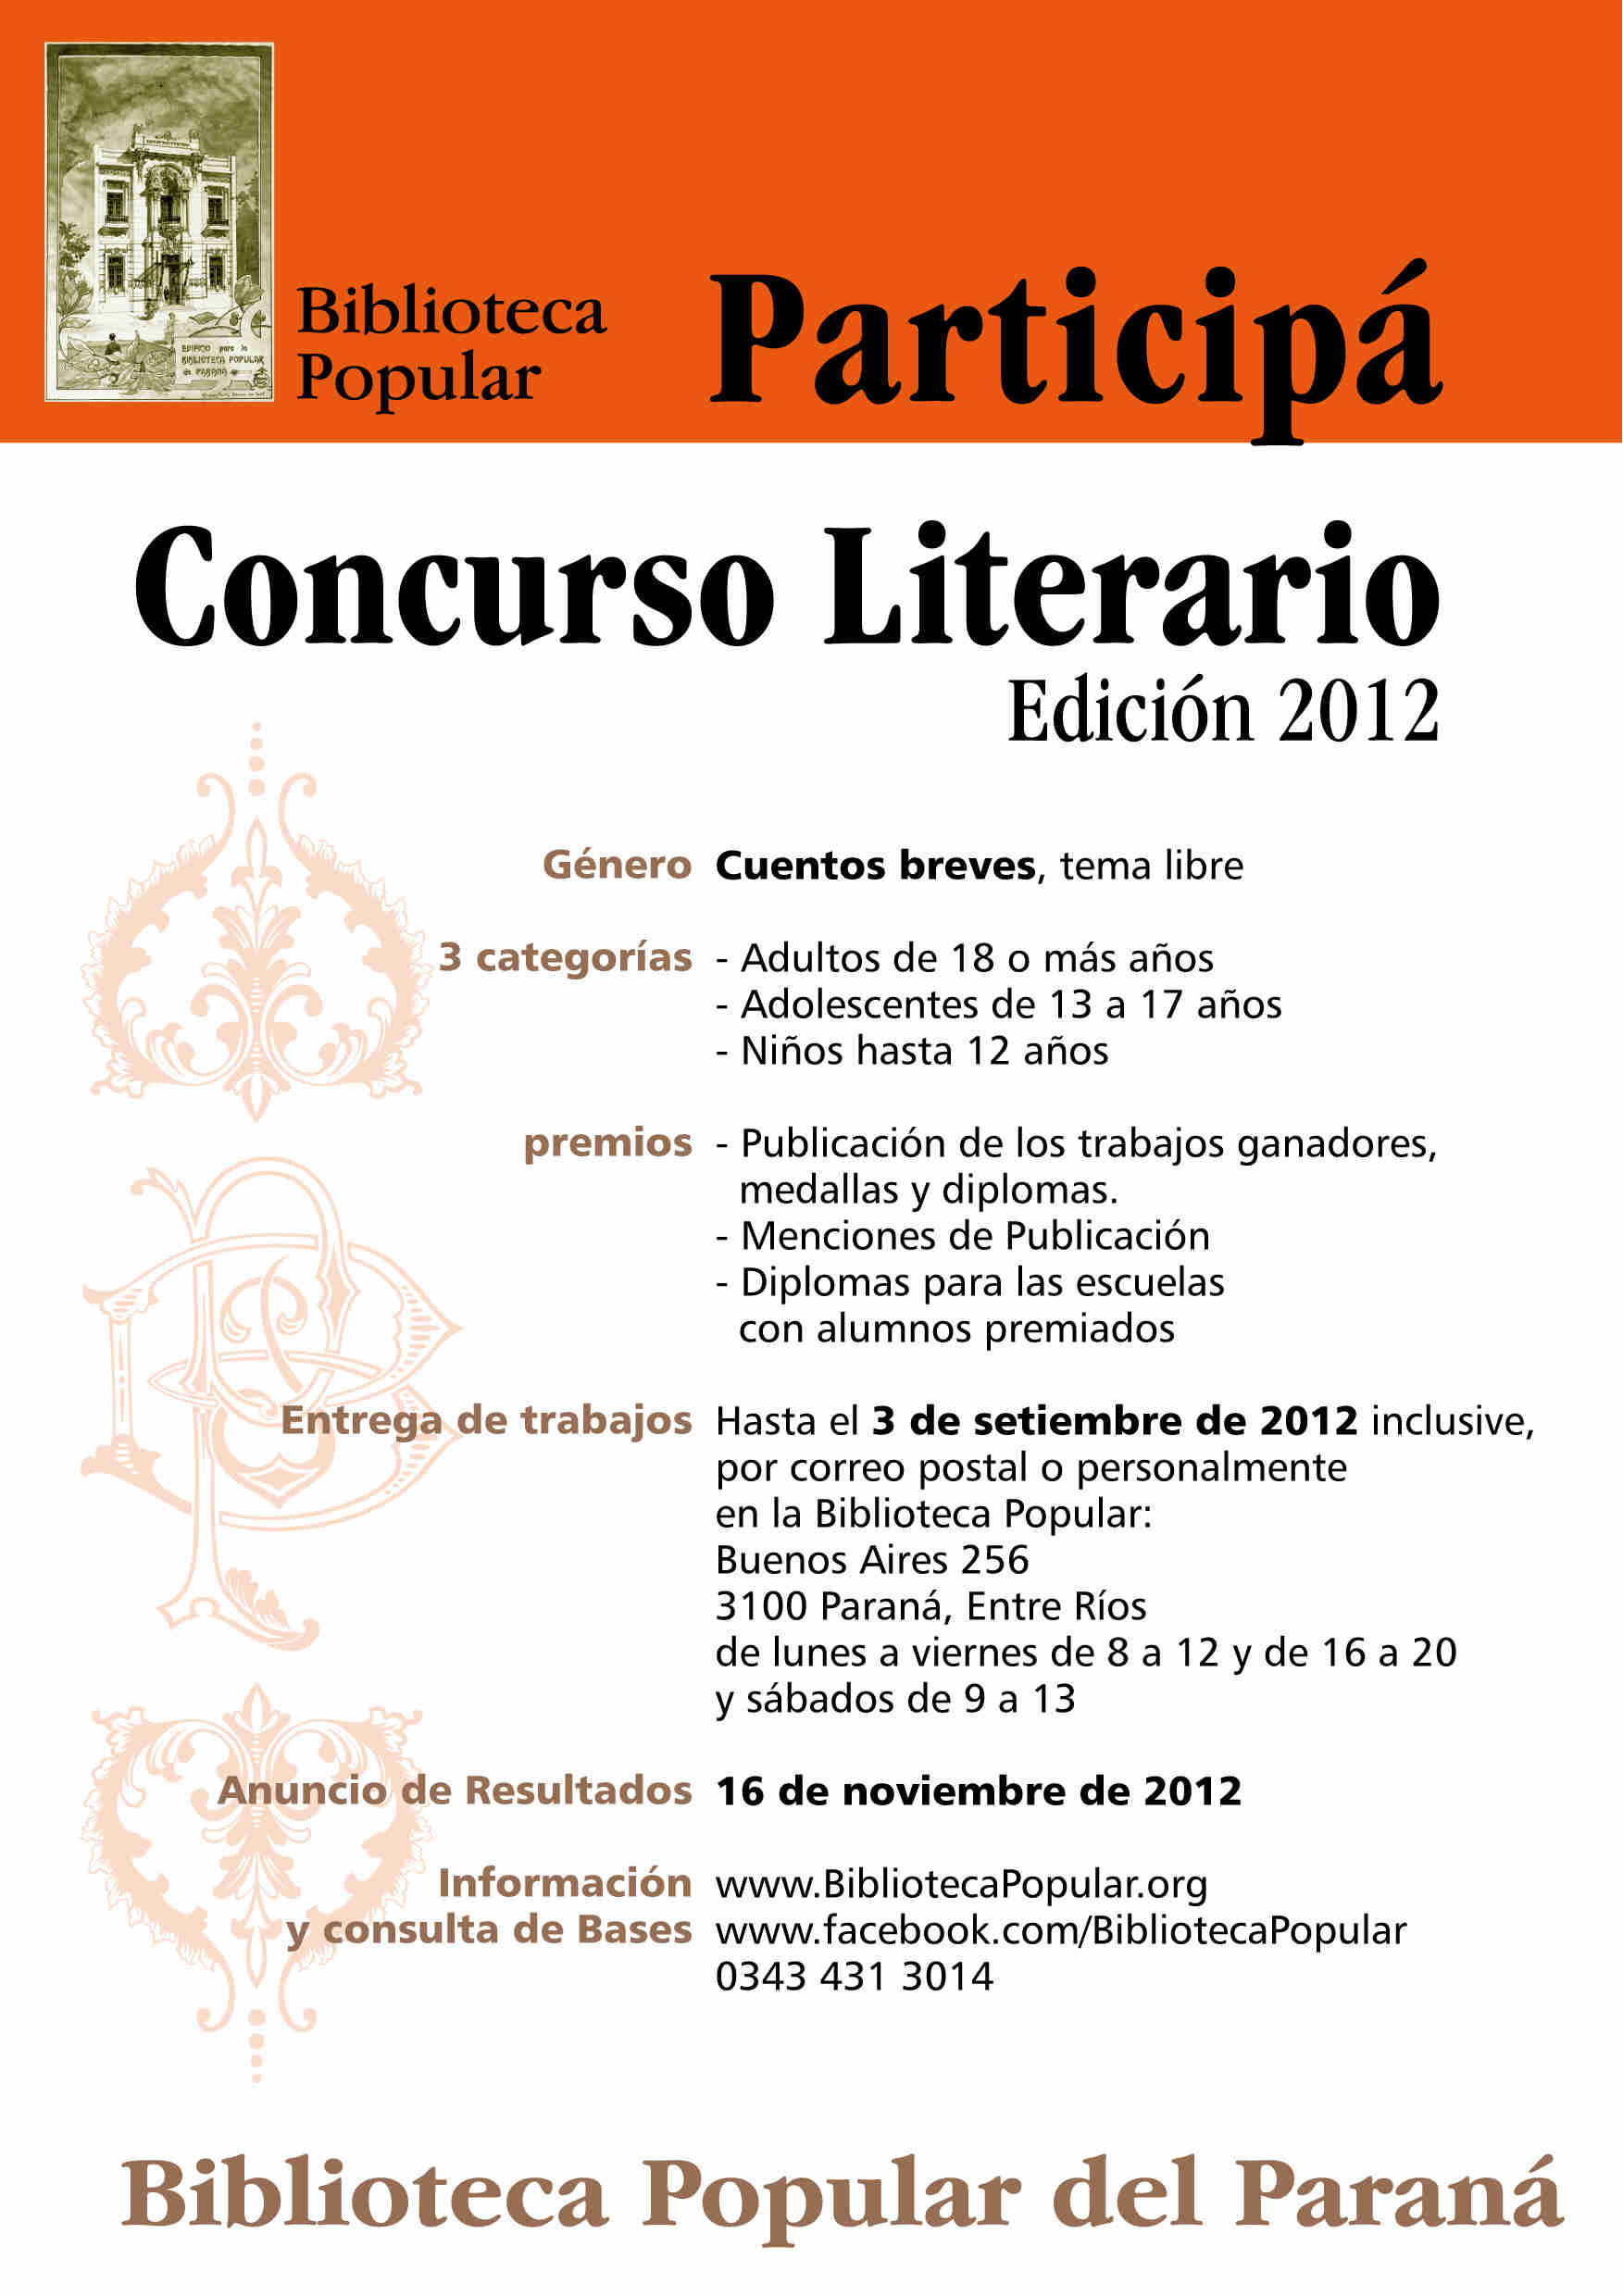 Afiche promocional del Concurso Biblioteca Popular del Paraná, Edición 2012